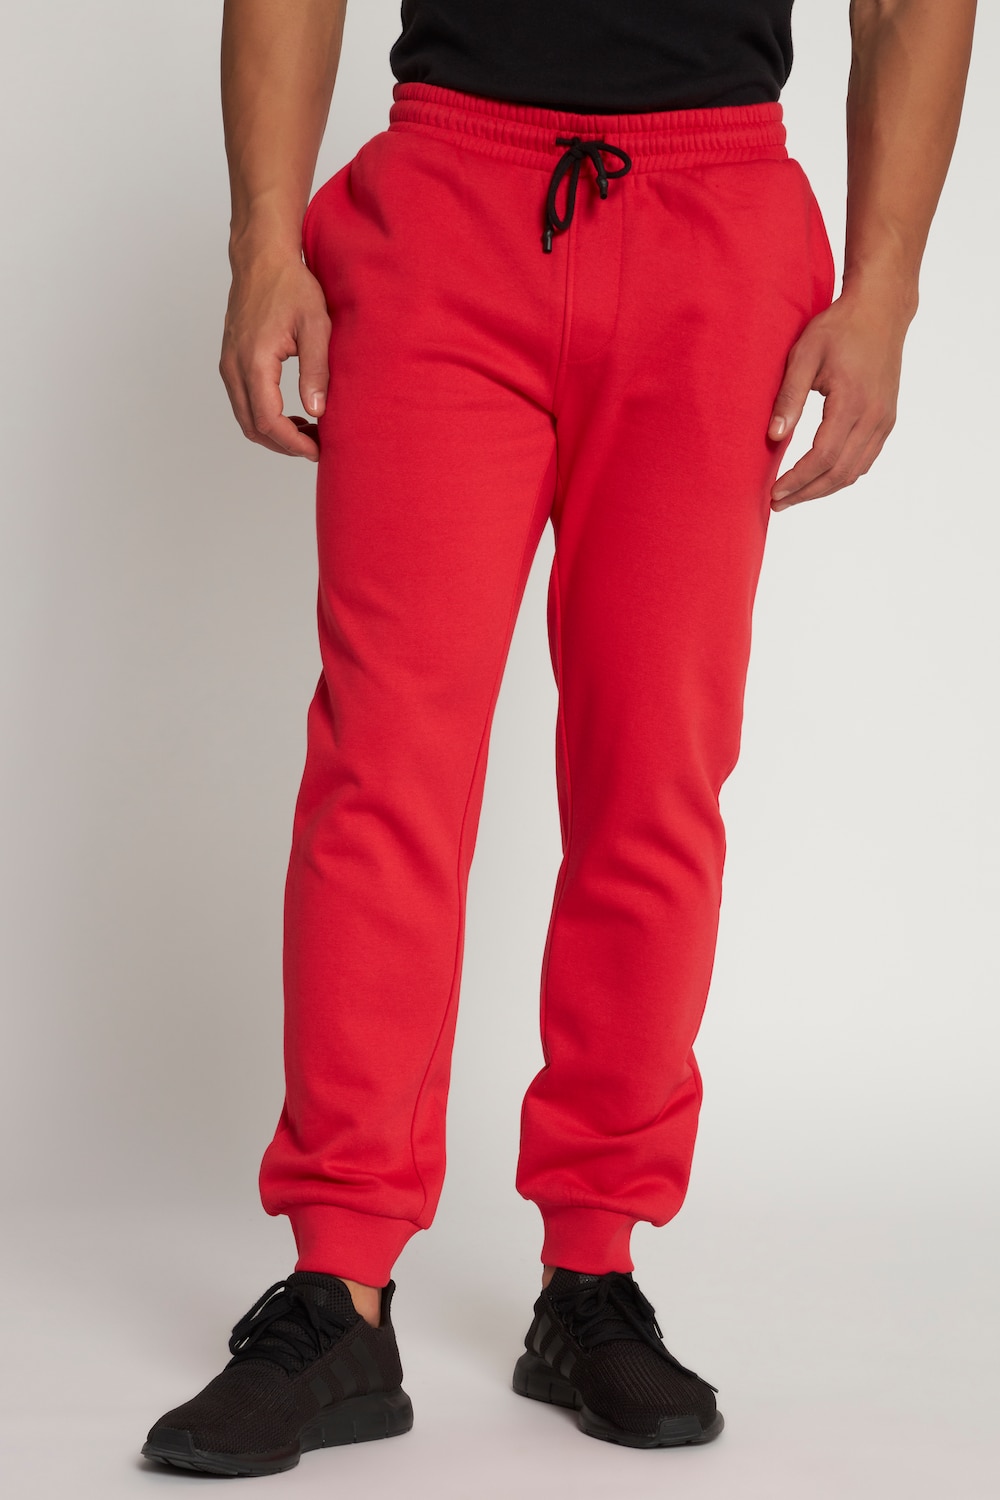 Große Größen Sweat-Hose, Herren, rot, Größe: 6XL, Baumwolle/Polyester, JP1880